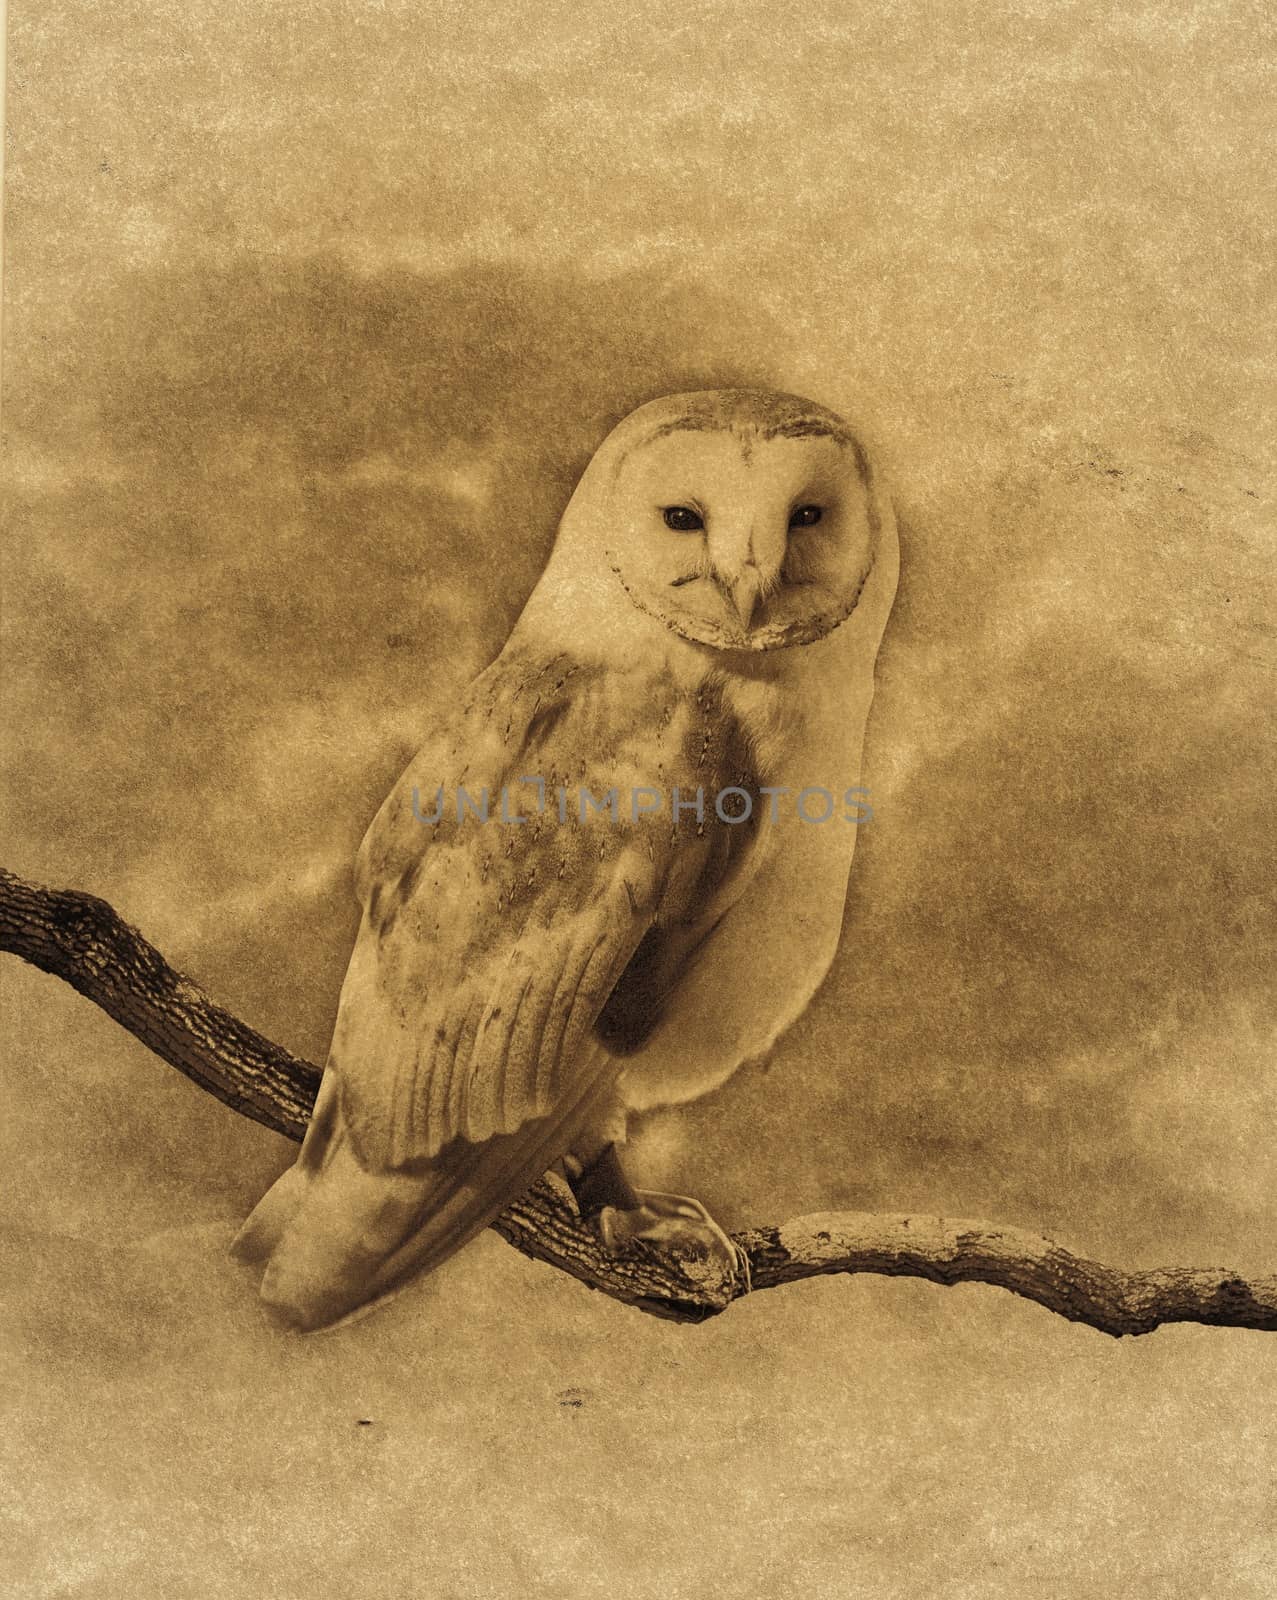 Barn Owl by Onigiristudio